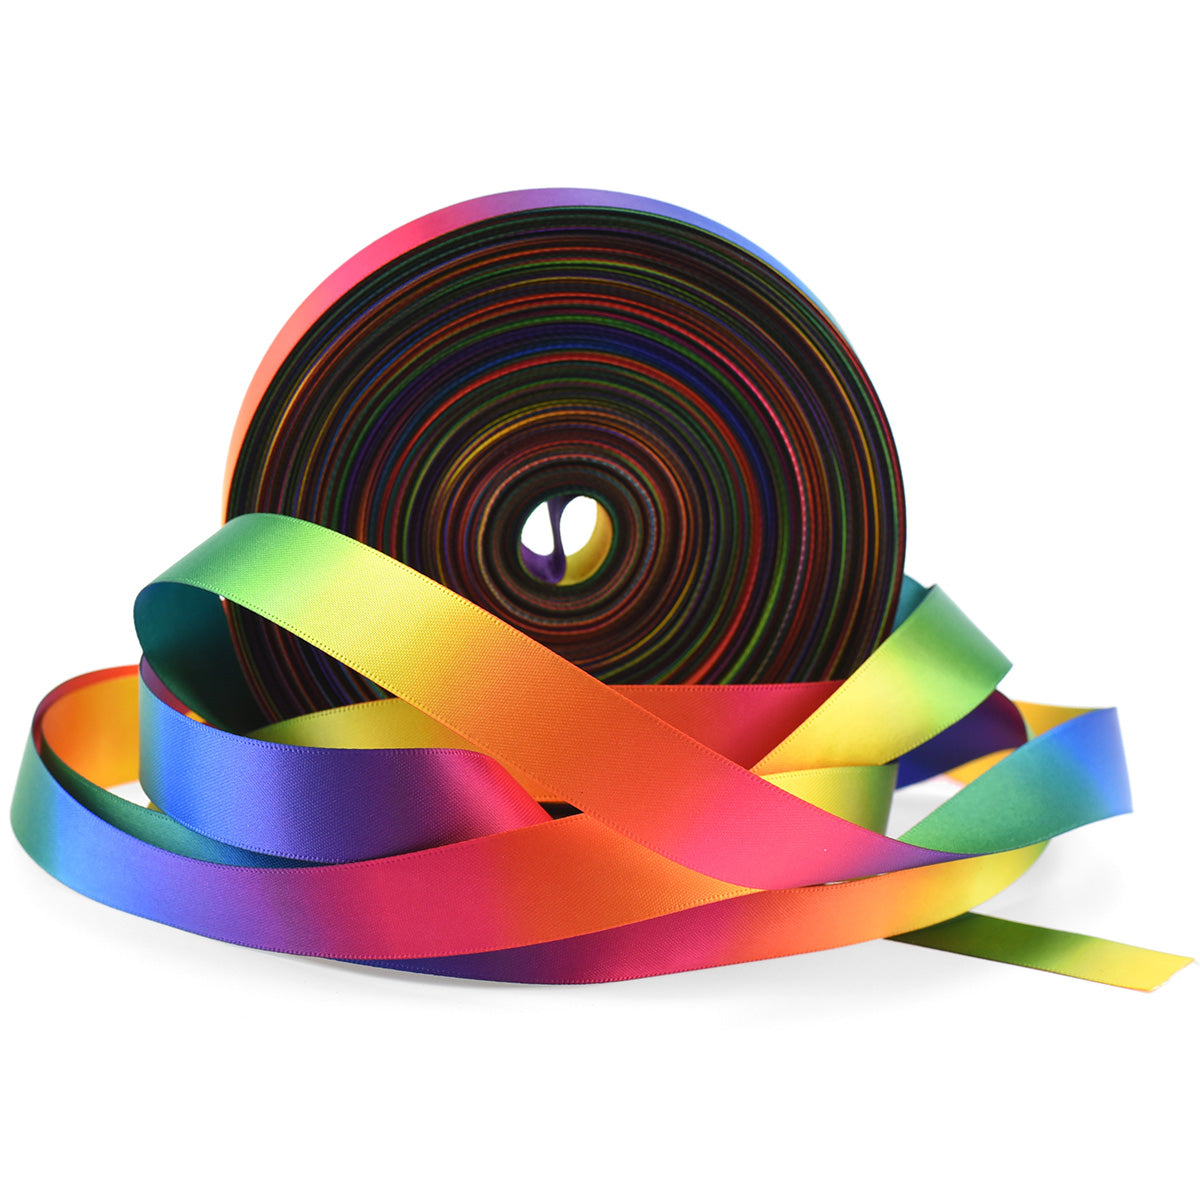 FiveSeasonStuff Rainbow Gradient Double Sided Satin Polyester Ribbon